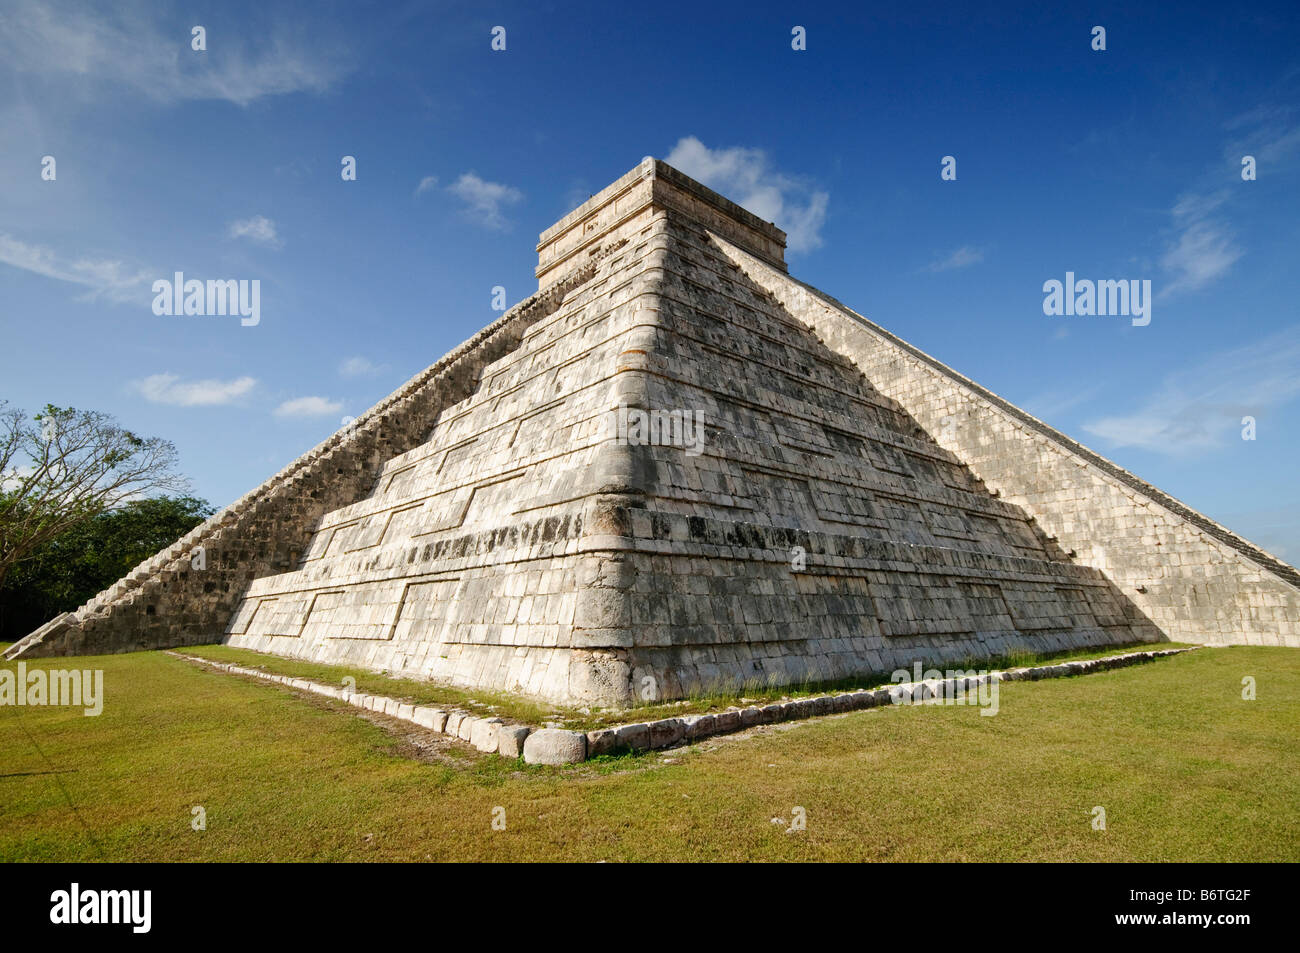 CHICHEN ITZA, Mexique - El Castillo (également connu sous le nom de Temple de Kuklcan) aux ruines mayas anciennes de Chichen Itza, Yucatan, Mexique 081216093336 4453.NEF. Chichen Itza, situé sur la péninsule du Yucatan au Mexique, est un site archéologique important présentant la riche histoire et les connaissances scientifiques avancées de la civilisation maya antique. Il est plus connu pour la Pyramide Kukulkan, ou « El Castillo », une structure à quatre côtés avec 91 marches de chaque côté, culminant en une seule étape au sommet pour représenter les 365 jours de l'année solaire. Banque D'Images